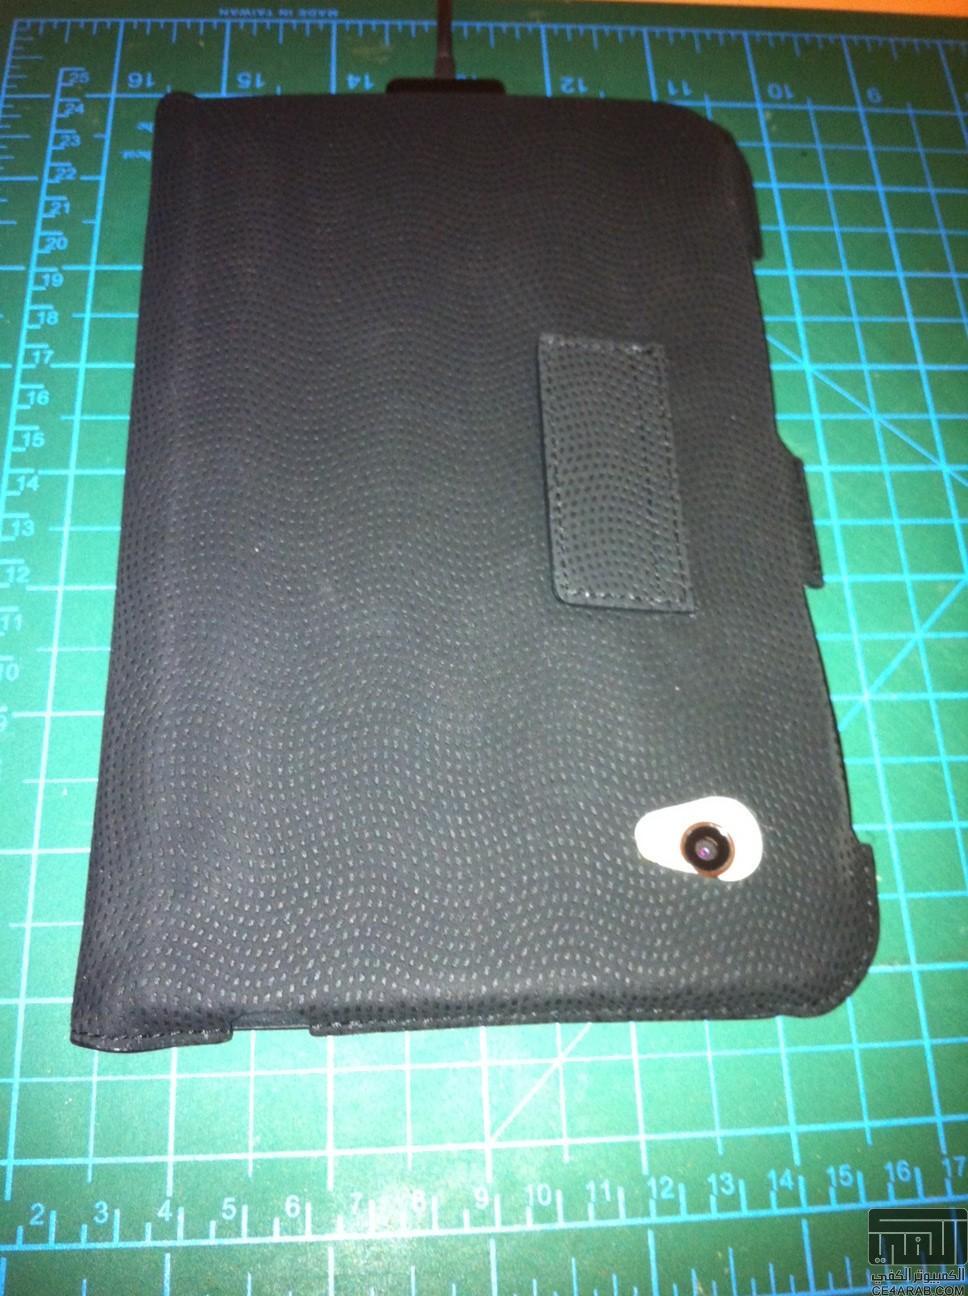 اصحاب Galaxy Tab شاركنا بشكل الcase, cover, pouch الذي تستخدمه